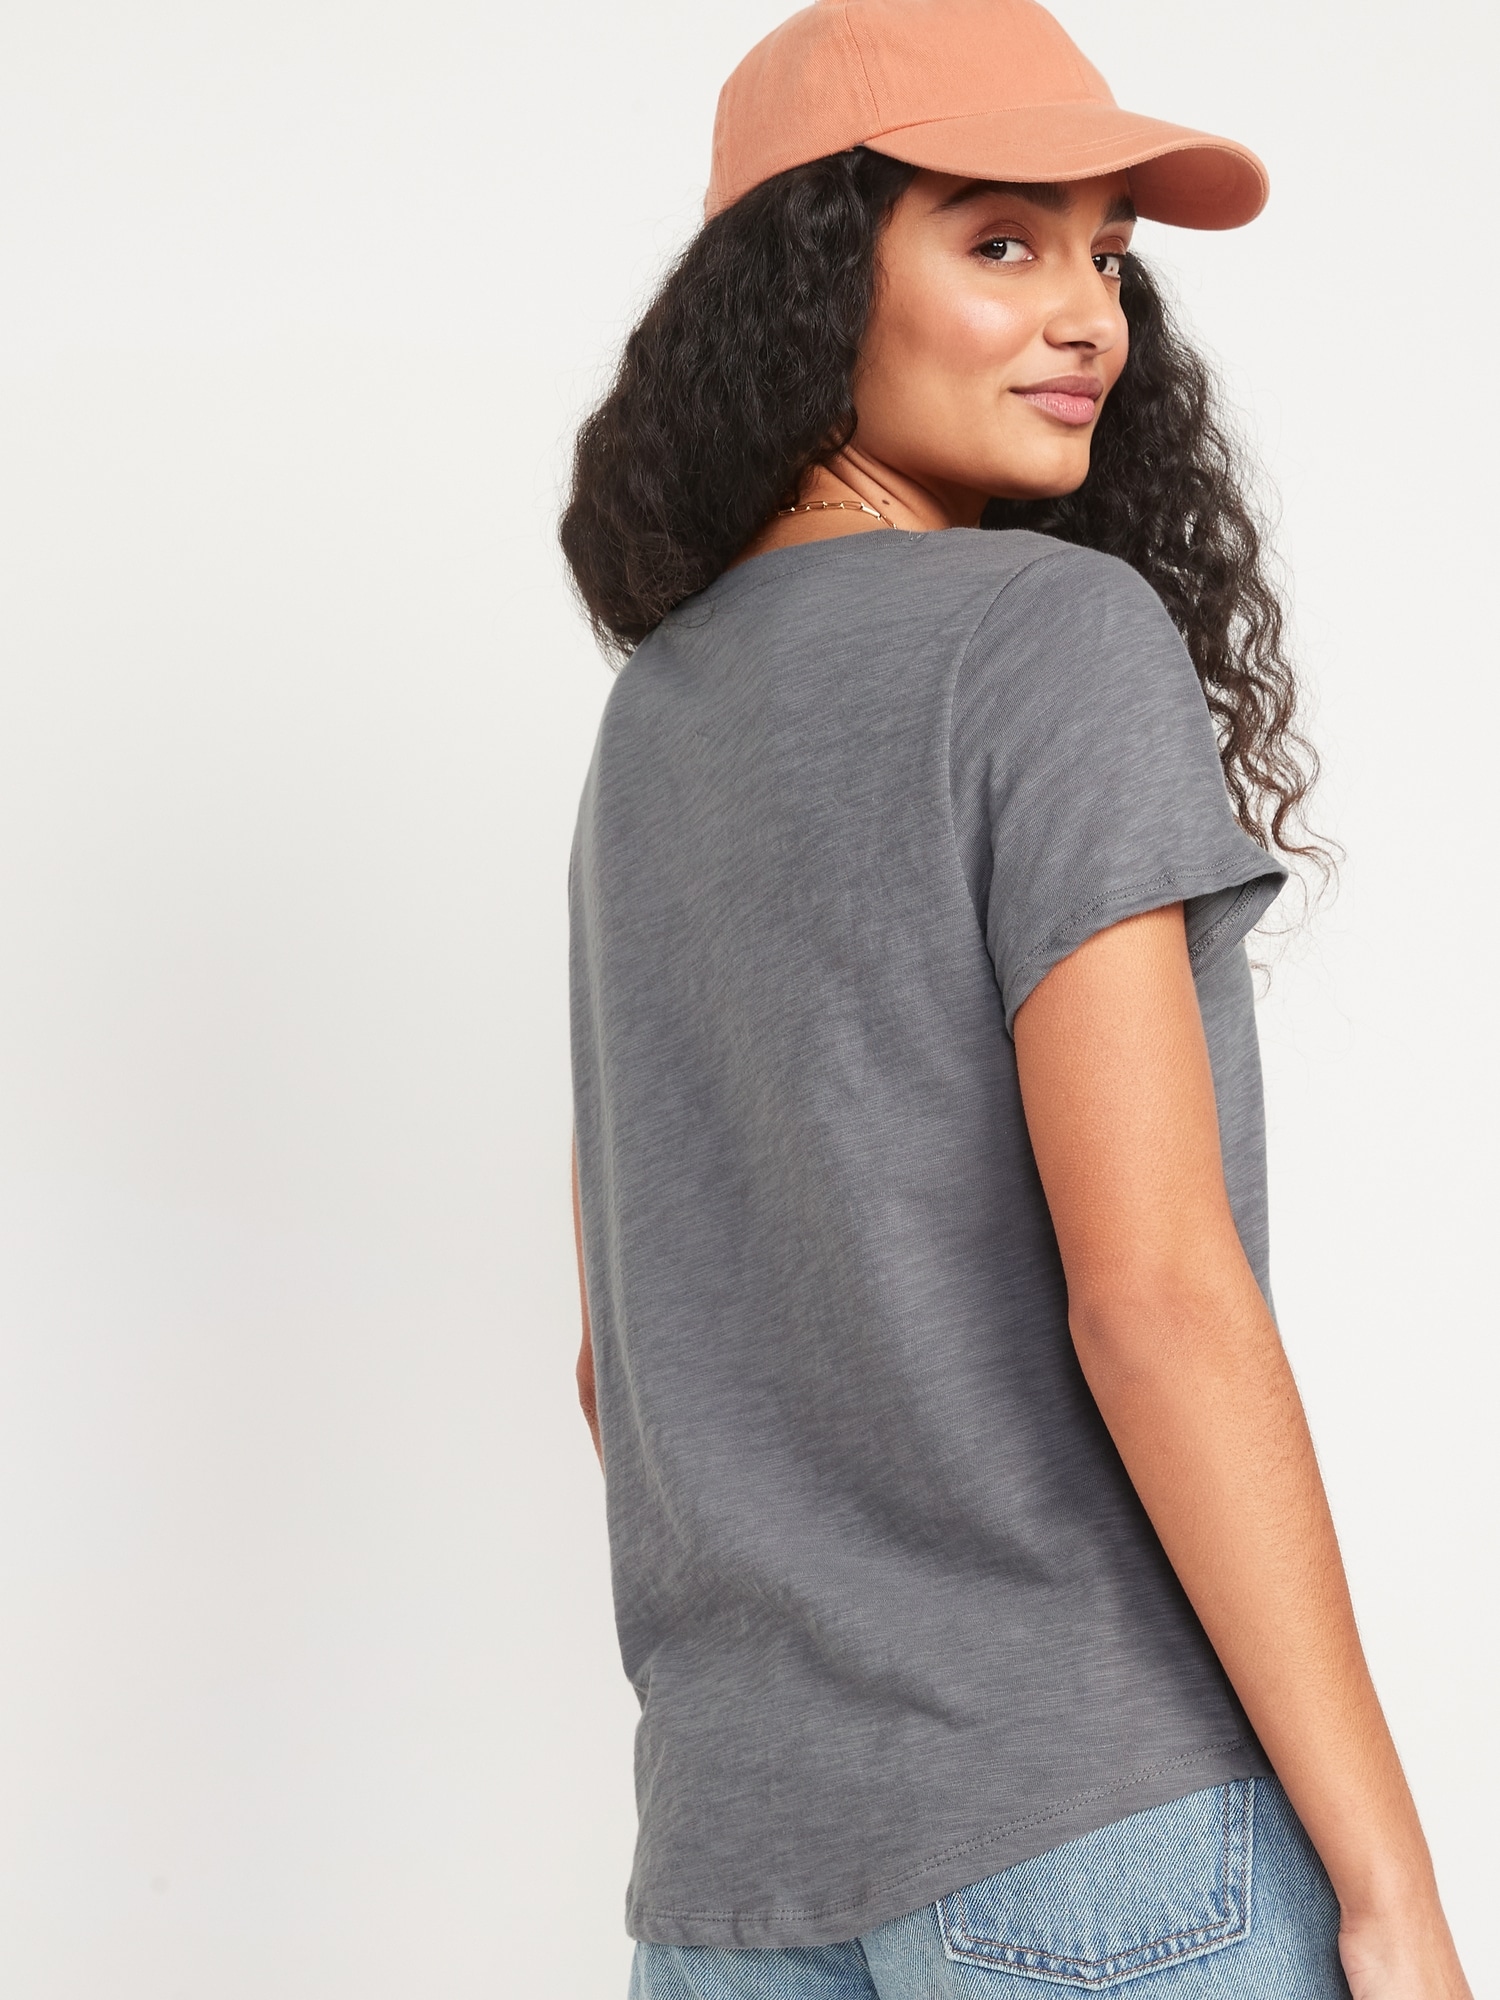 Gap Women's Navy V-Neck Soft Slub Vintage Wash T-Shirt Midi Size L 